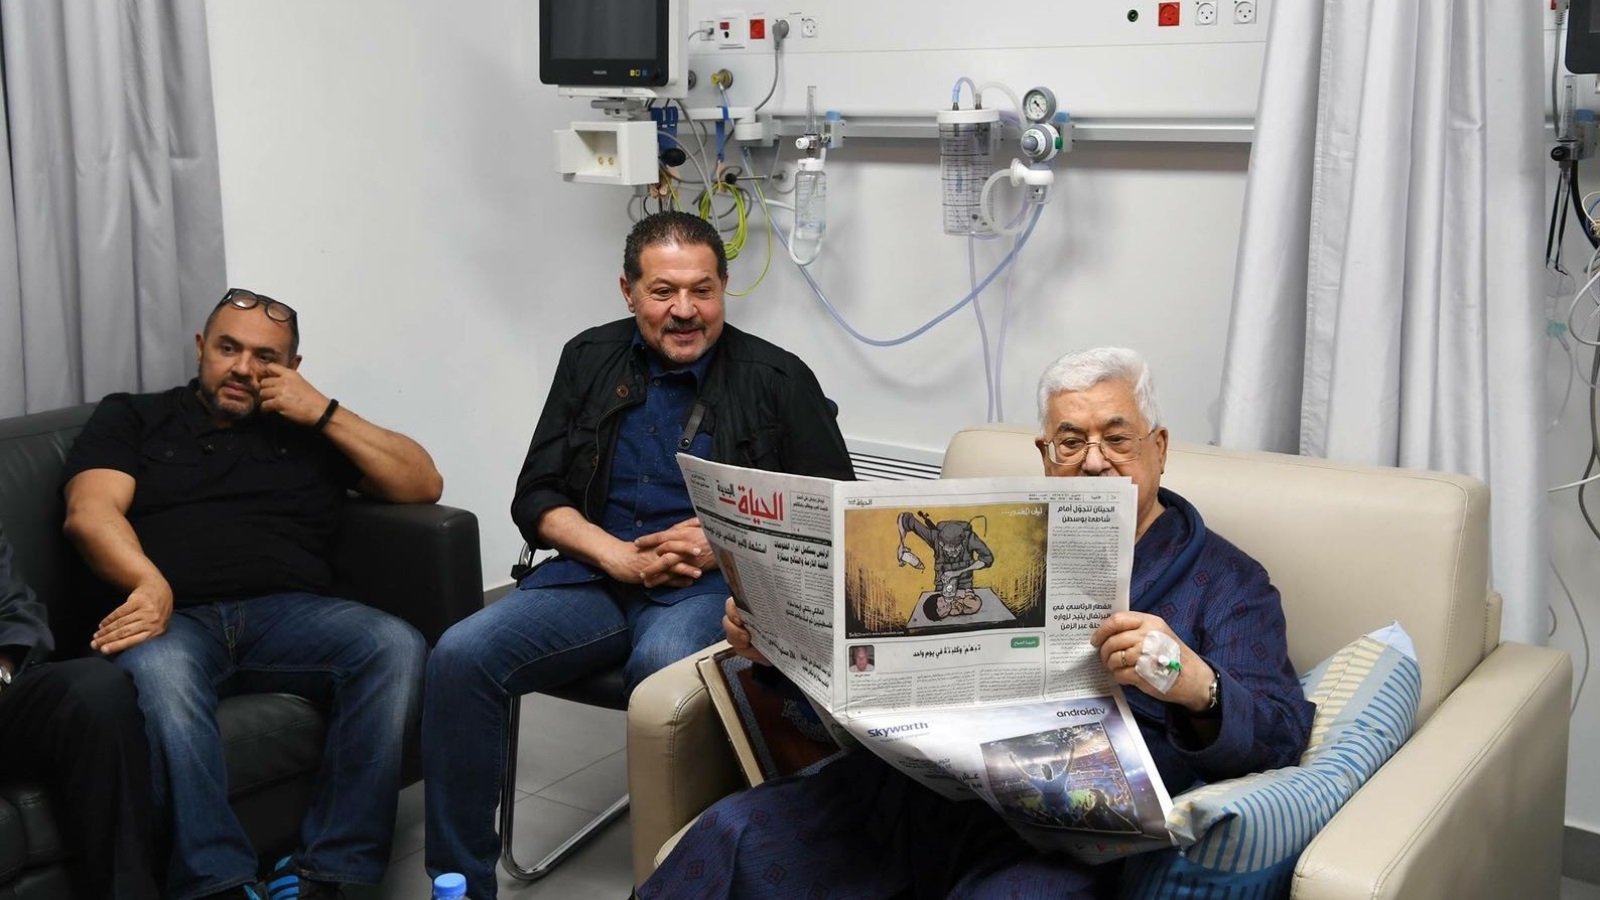 حساسية الوضع الفلسطيني الراهن وتقدم الرئيس عباس في العمر، وحالته الصحية، دائما كانت محل اهتمام كبير في الأوساط الفلسطينية والعربية والدولية